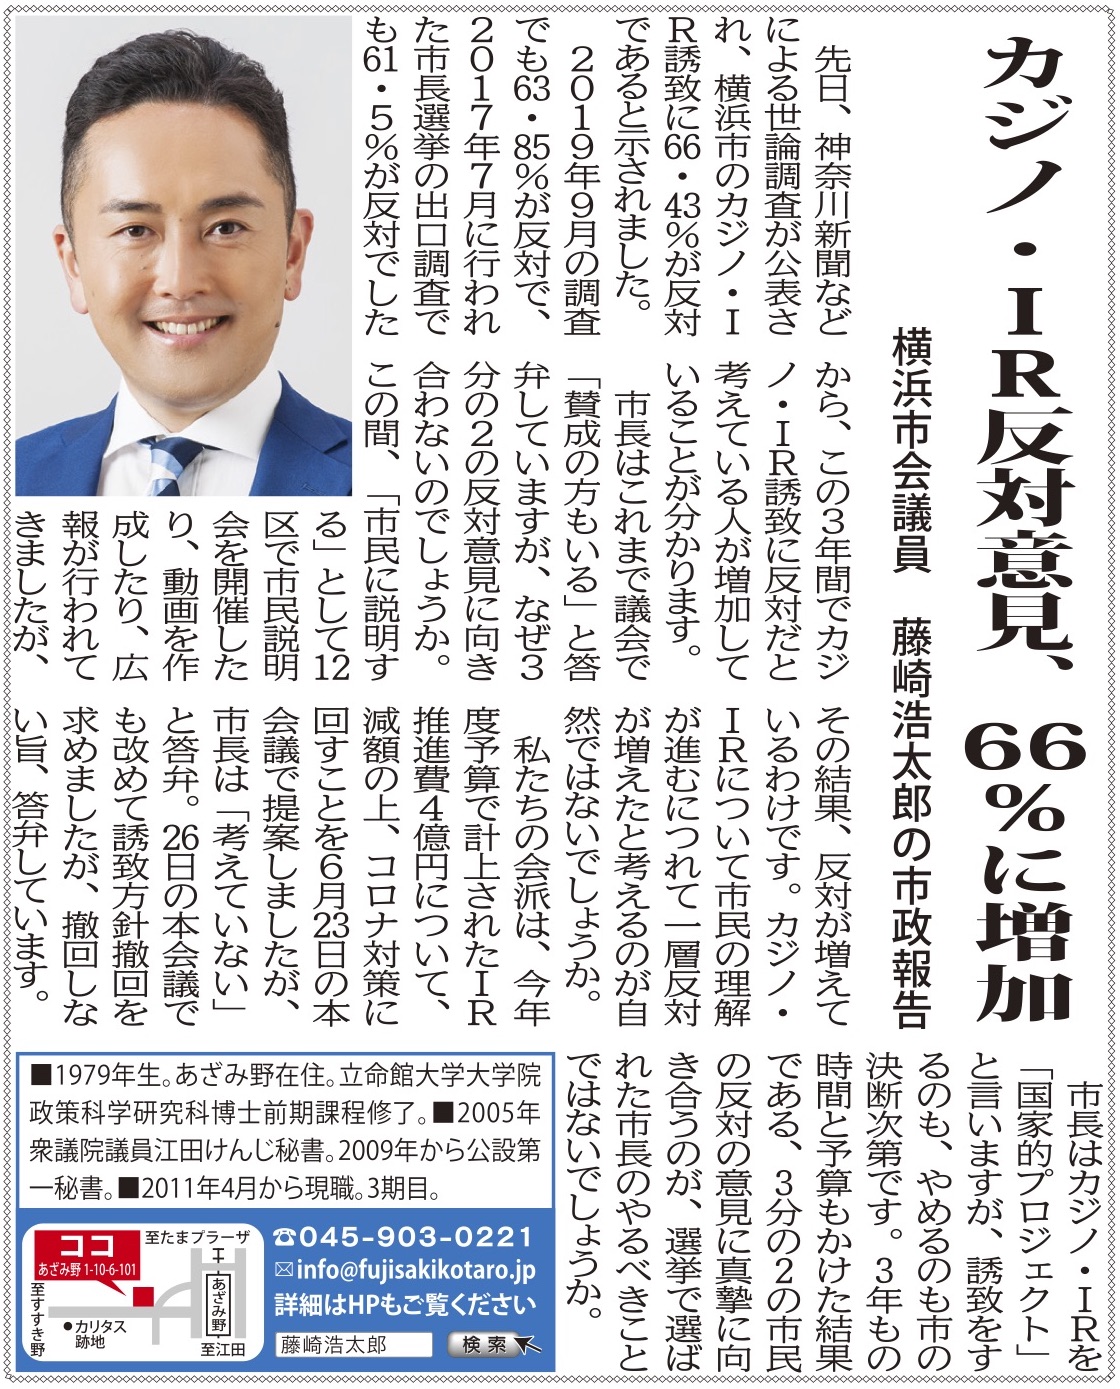 カジノ Ir誘致反対意見が66 43 に増加 タウンニュースより 藤崎浩太郎